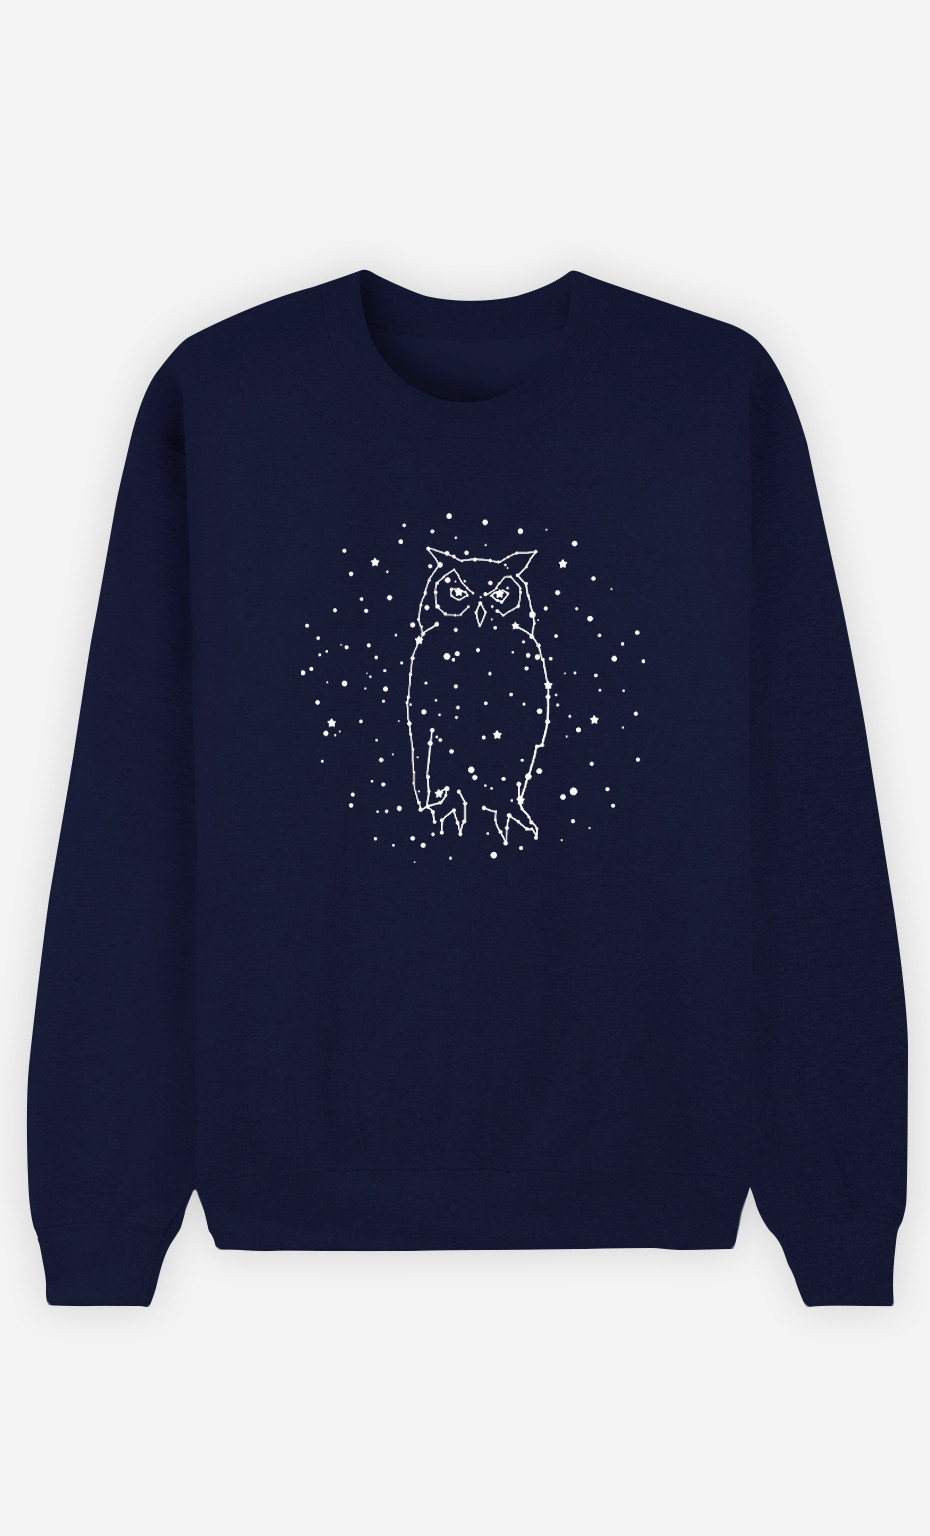 Frauen Sweatshirt Owl Constellation